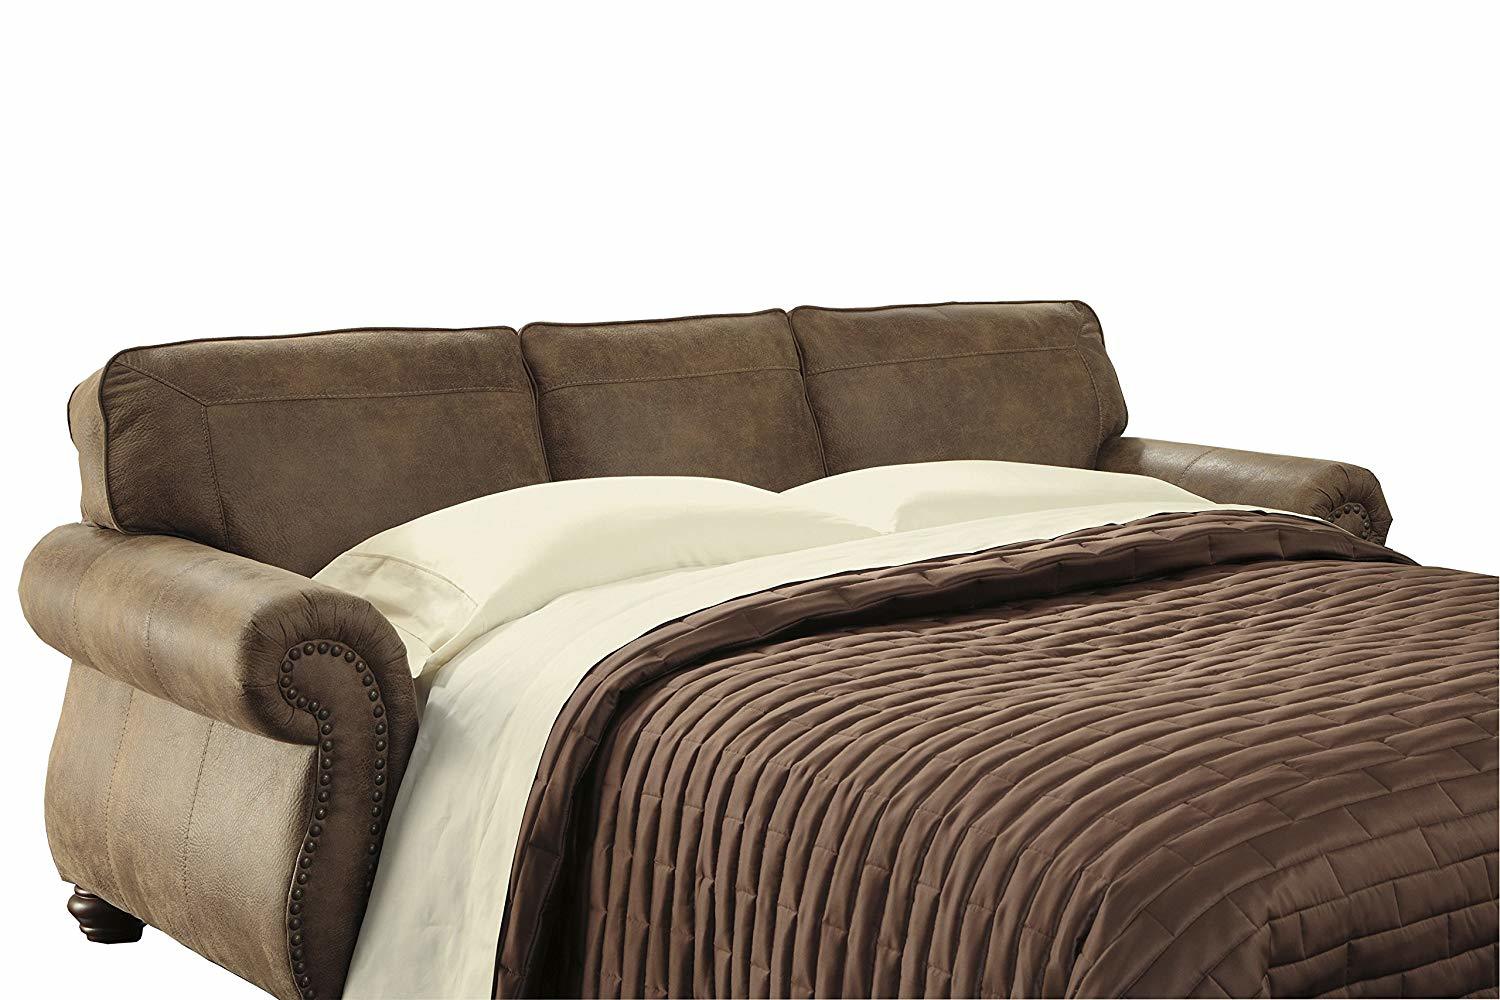 thick mattress sleeper sofa beds